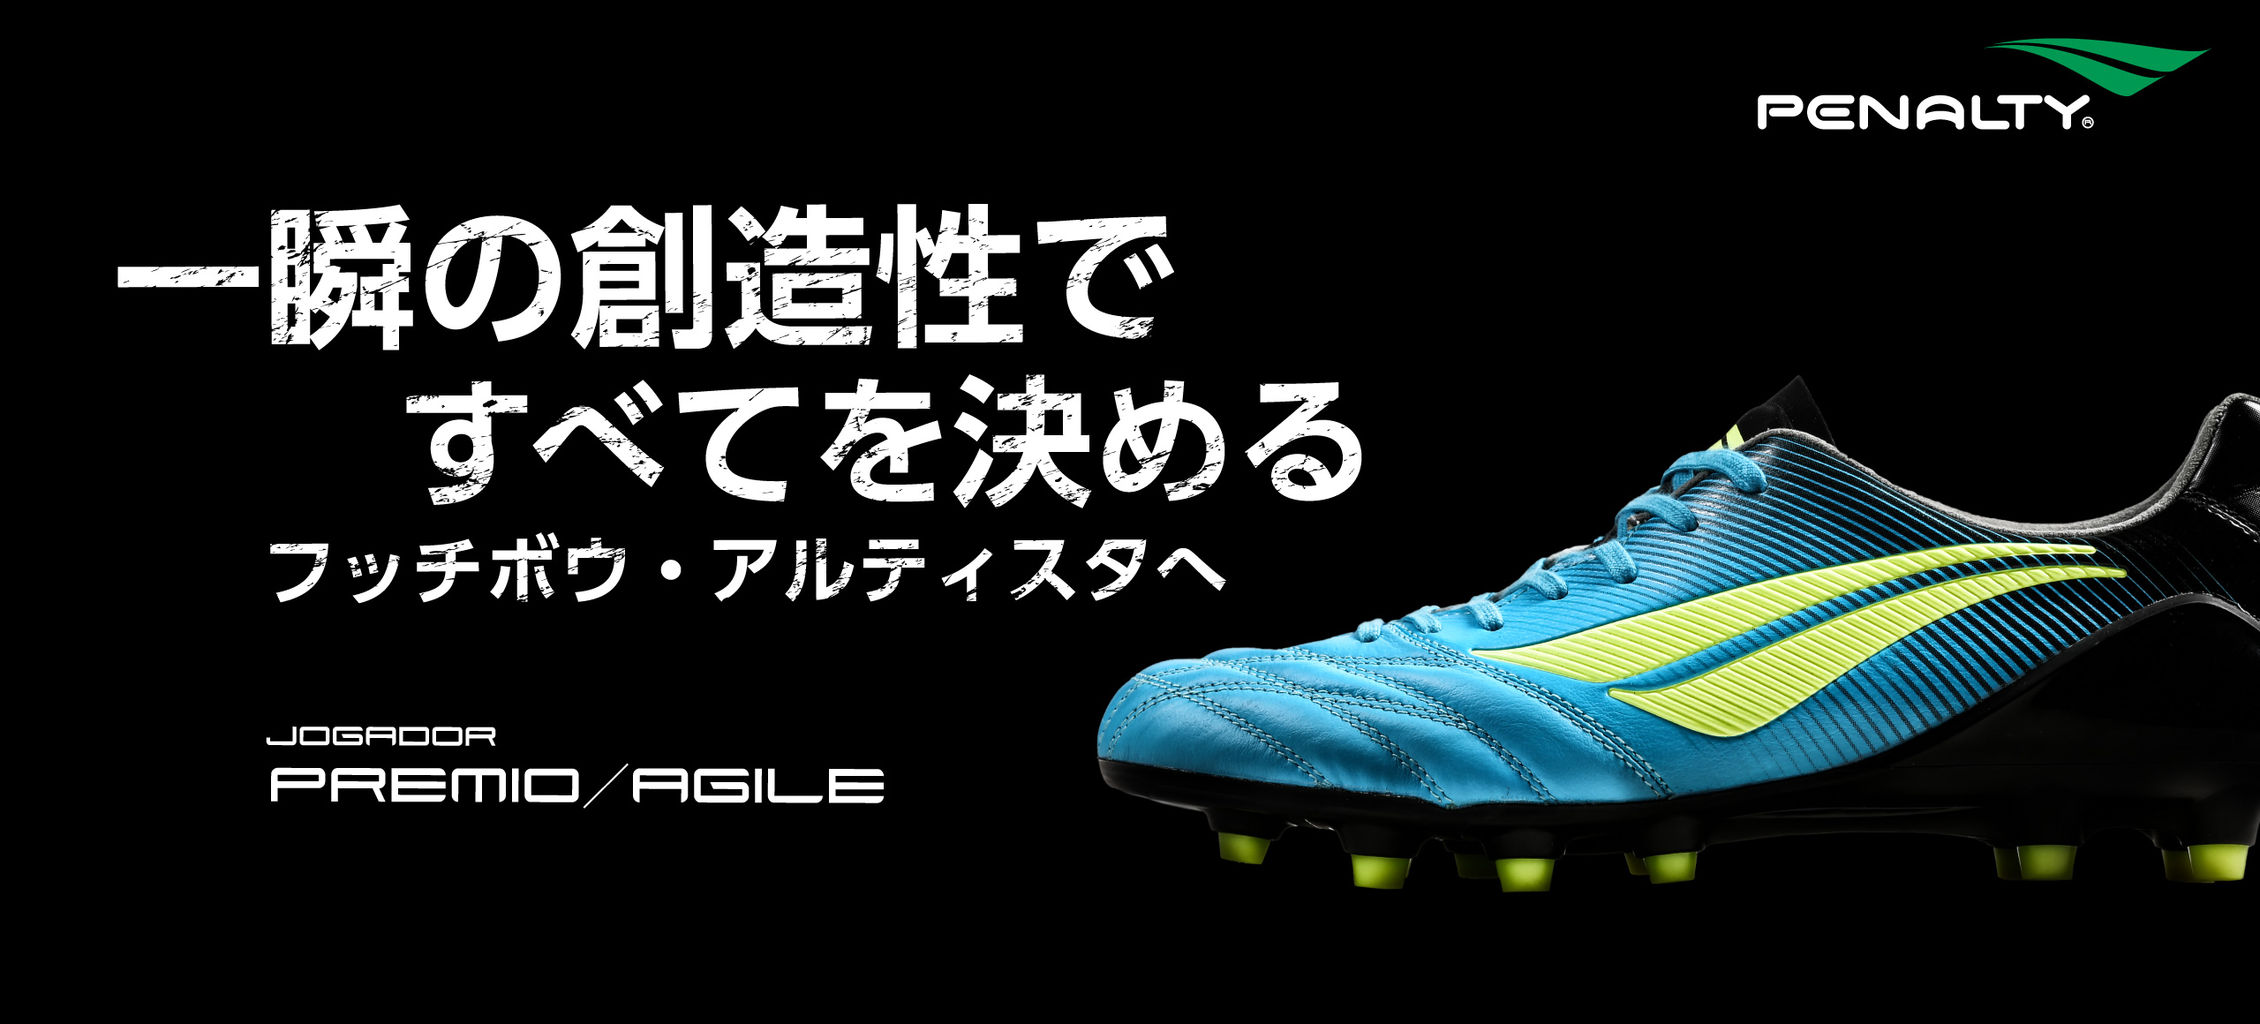 Penaltyスパイク ジョガドールプレミオ アジーレ 正式公開 Kohei S Blog サッカースパイク情報ブログ